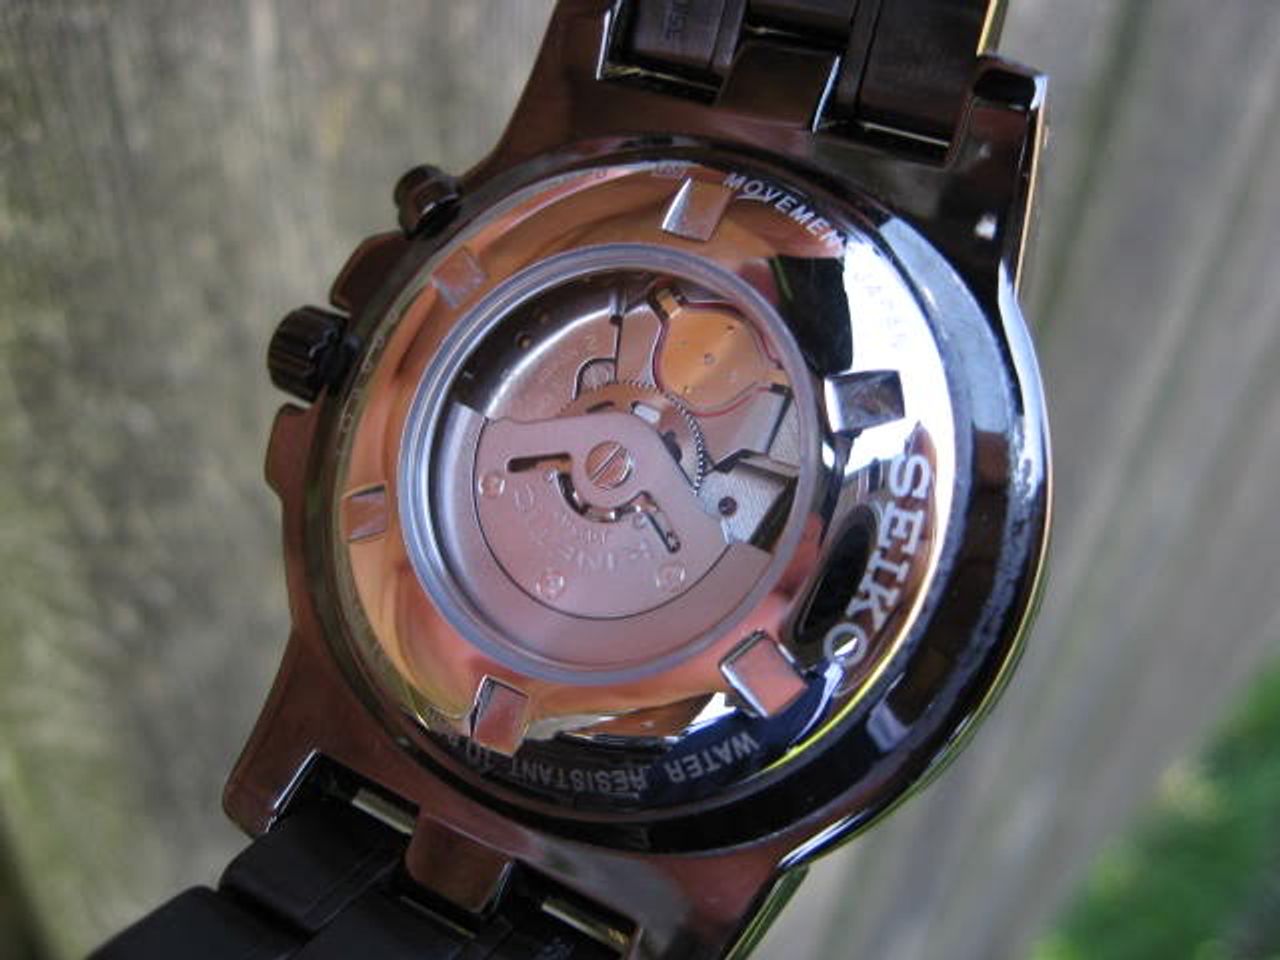 Đồng hồ Seiko Kinetic SKA389 sử dụng công nghệ Kinetic hiện đại